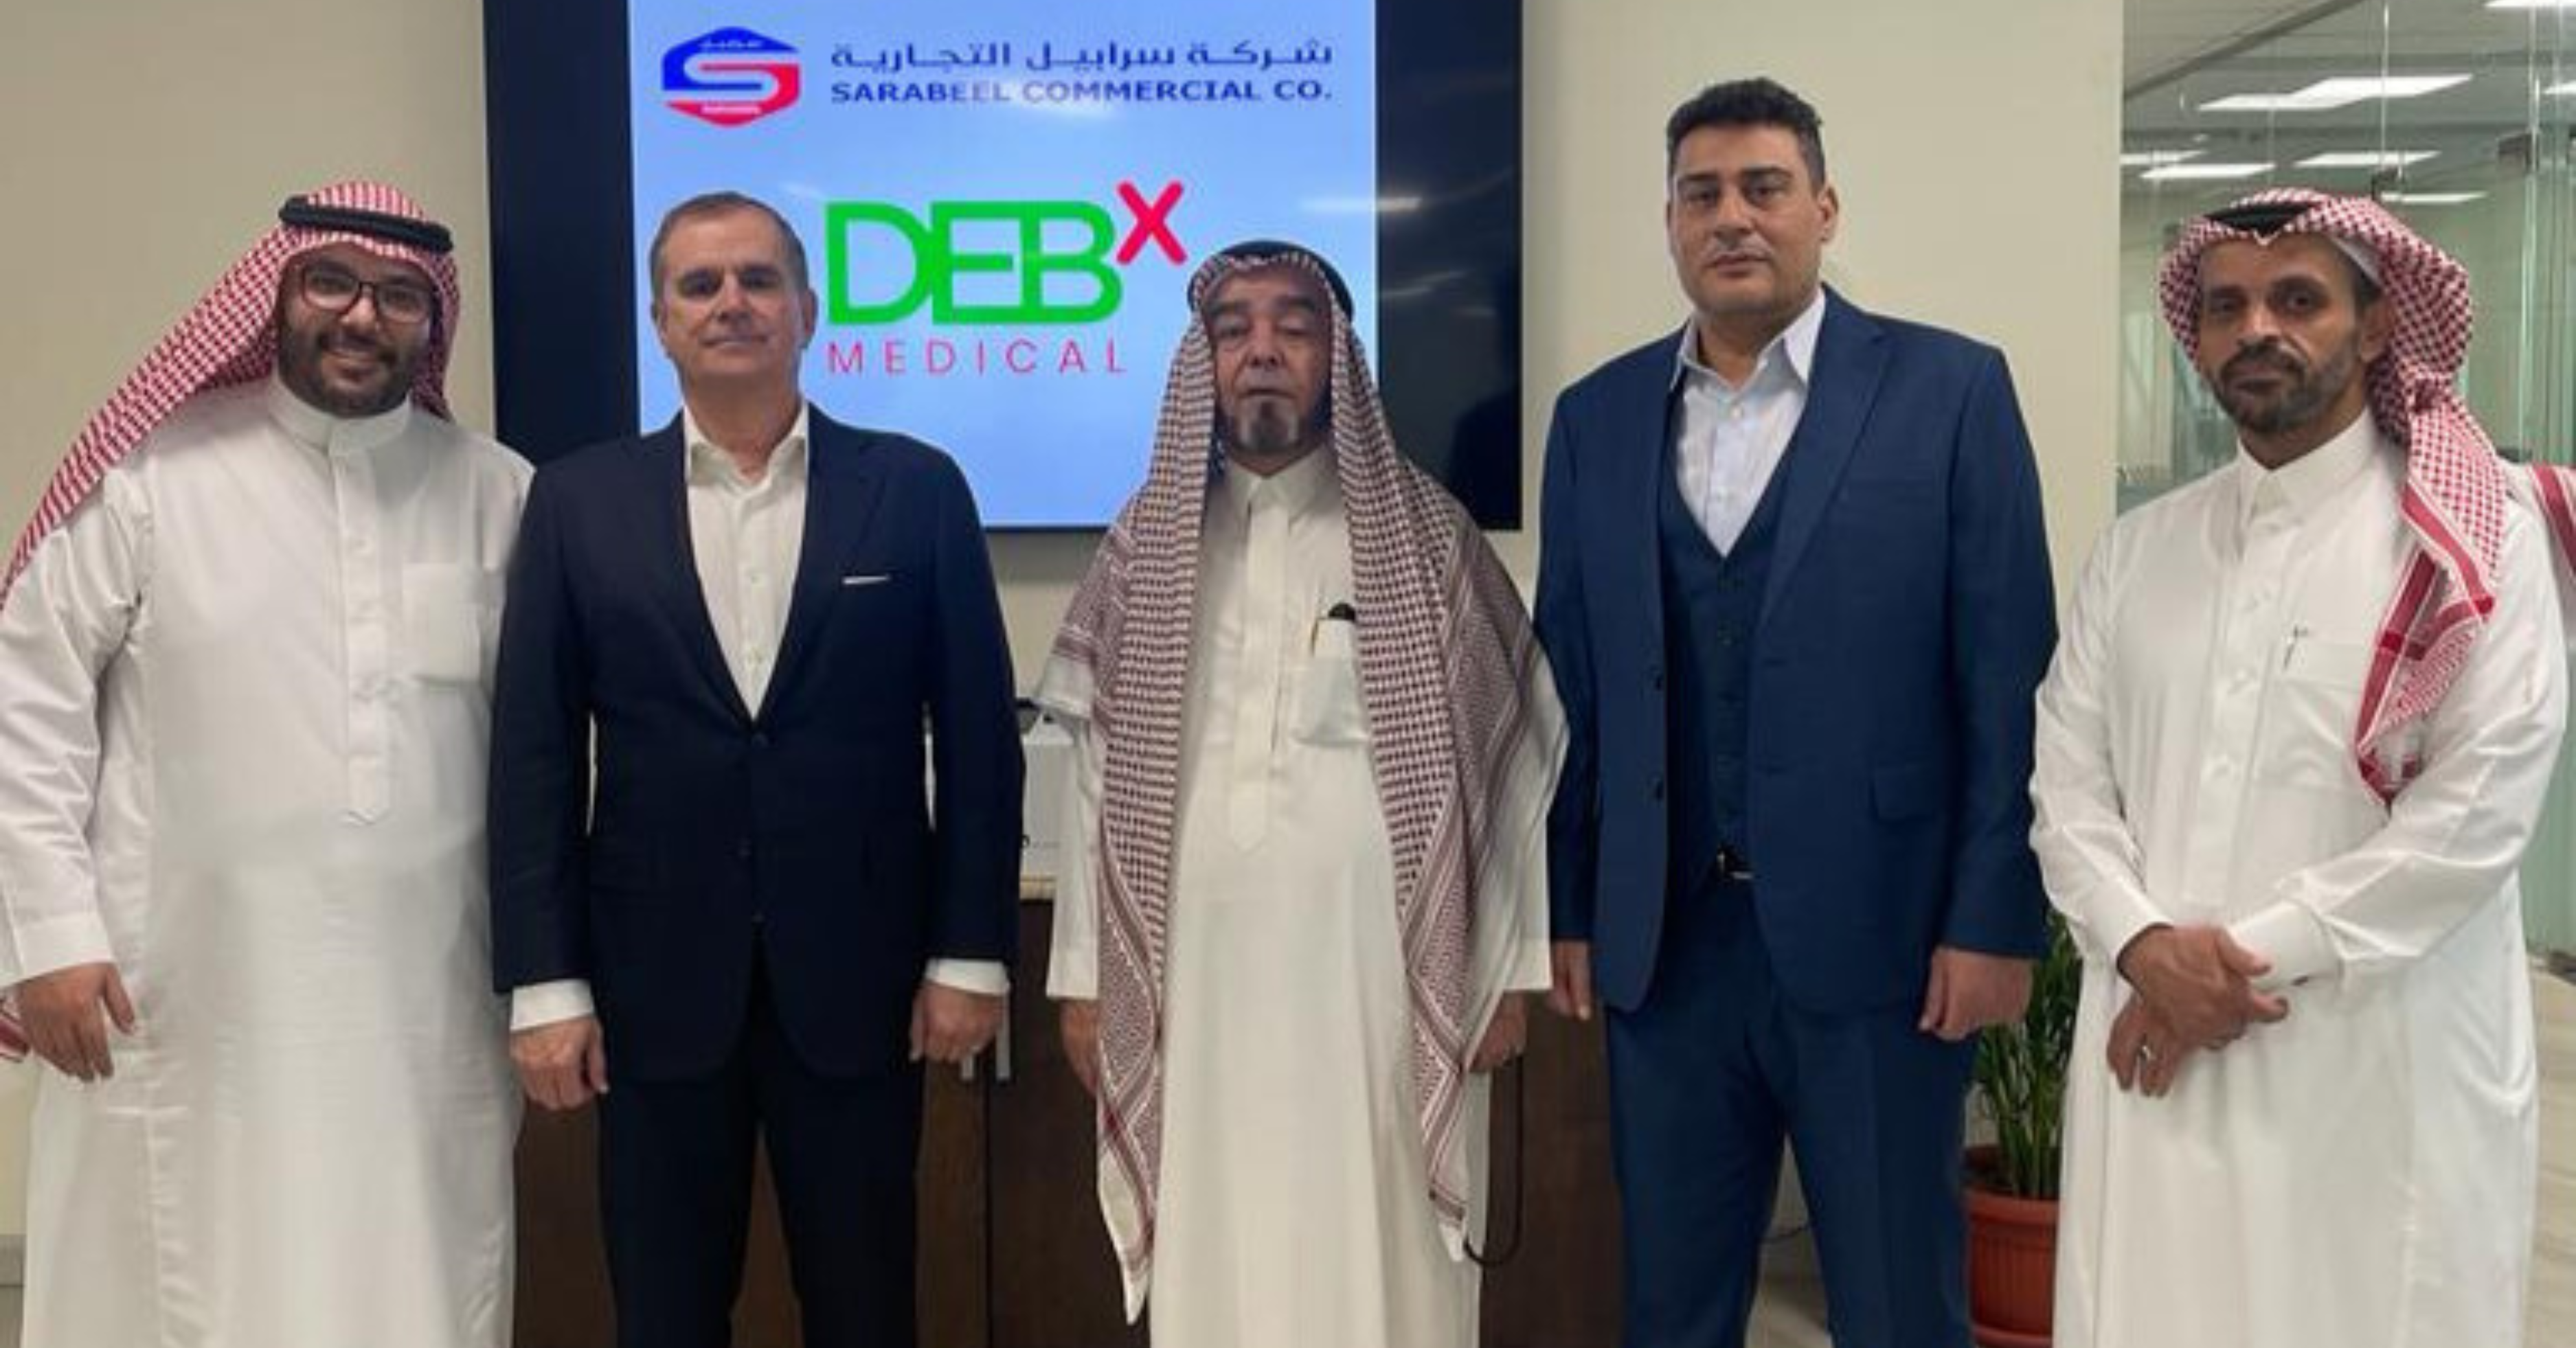 DEBx Medical تتوسع في الشرق الأوسط: تكشف النقاب عن مقر جديد وشراكة توزيع استراتيجية